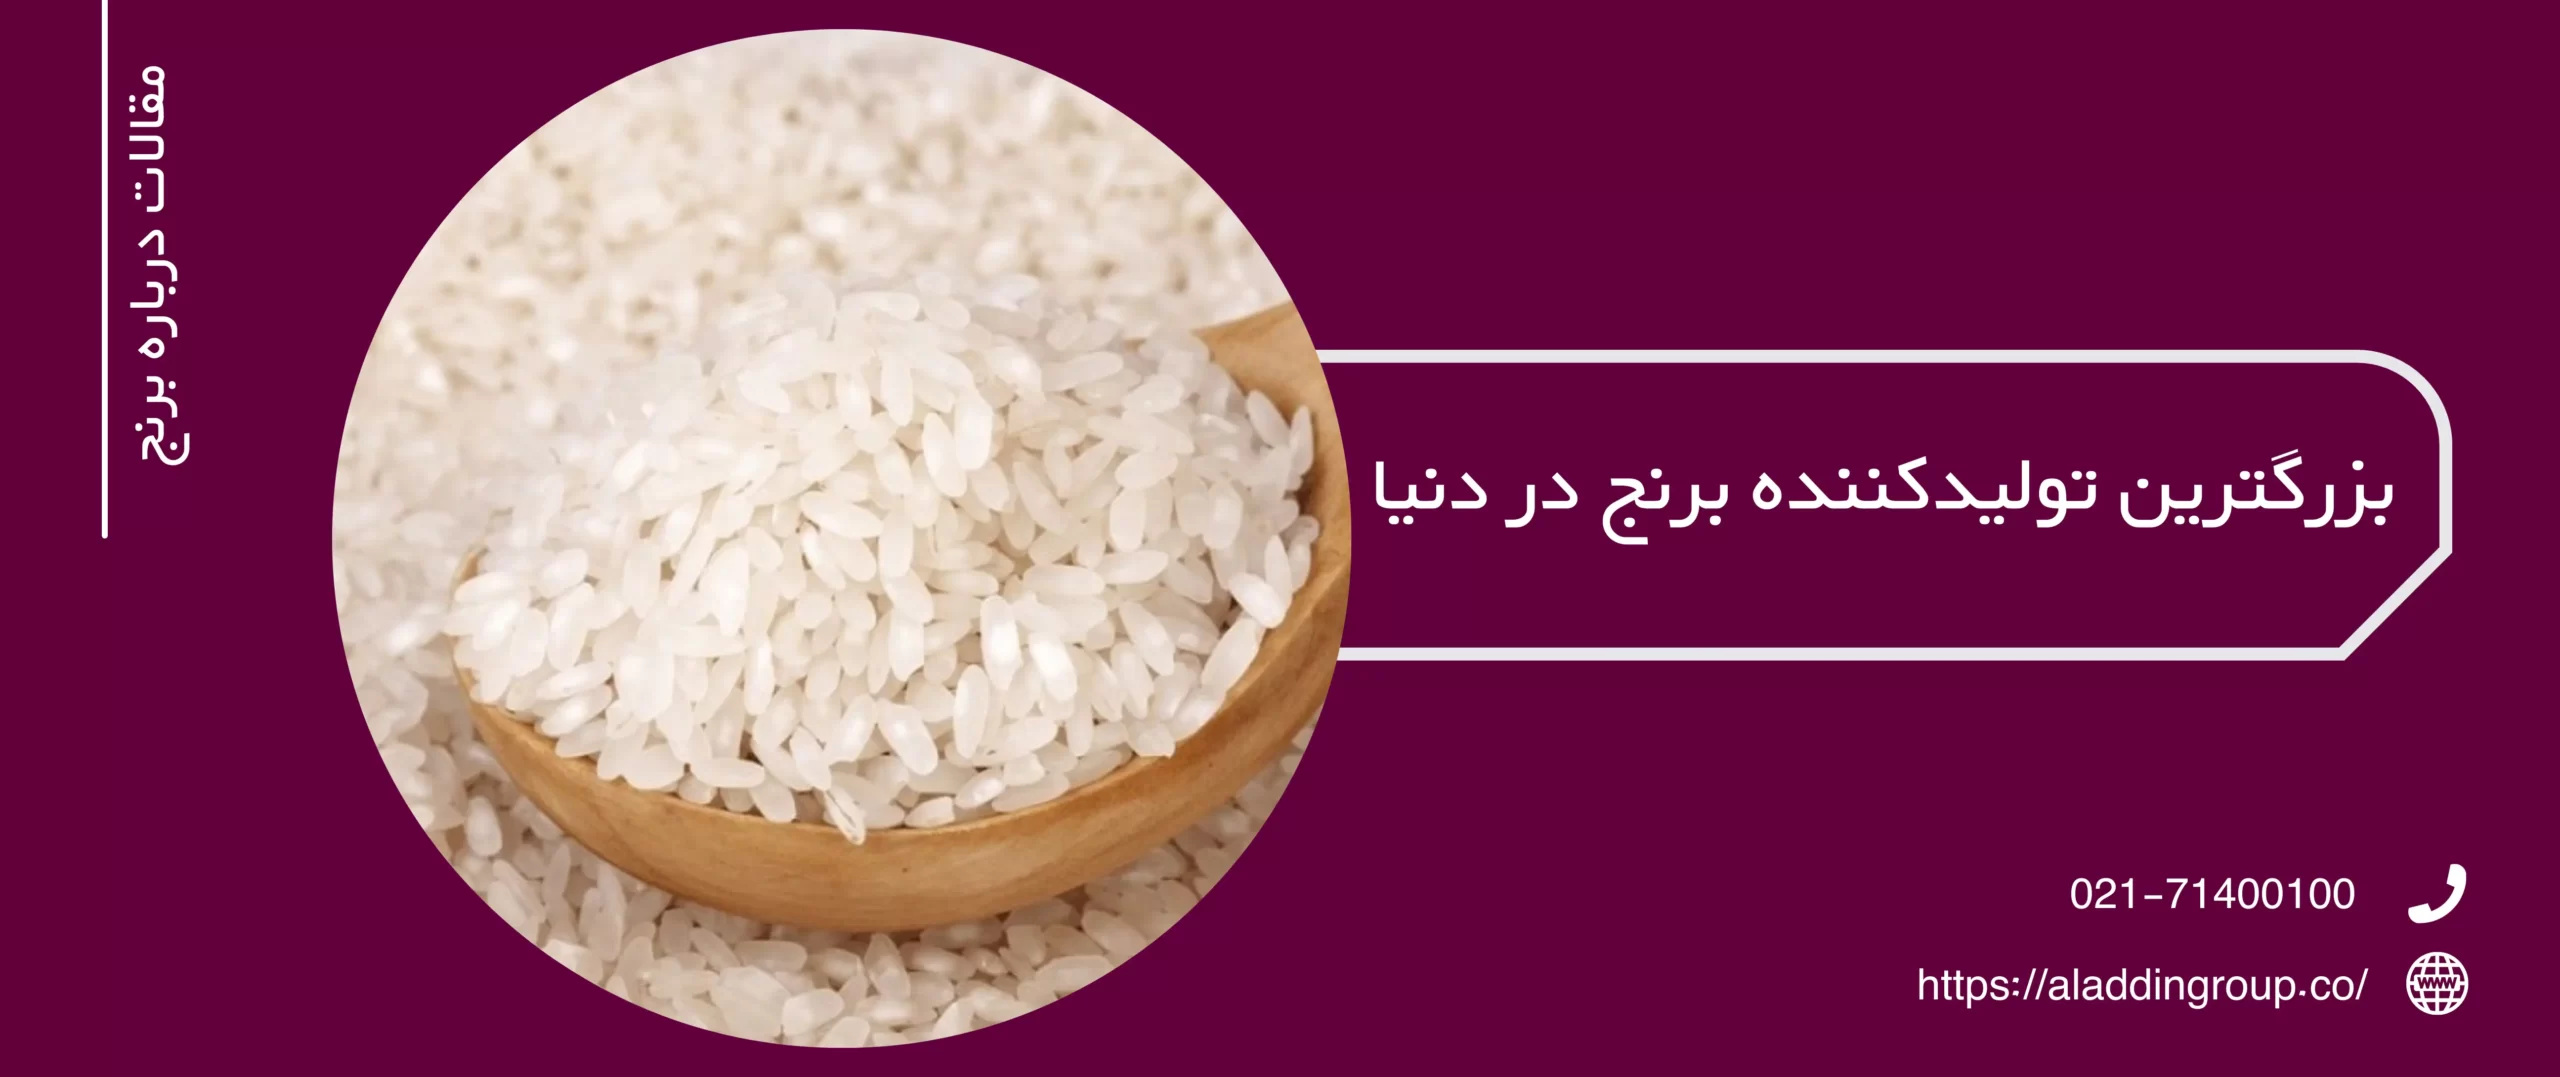 بزرگترین تولید کننده برنج در دنیا